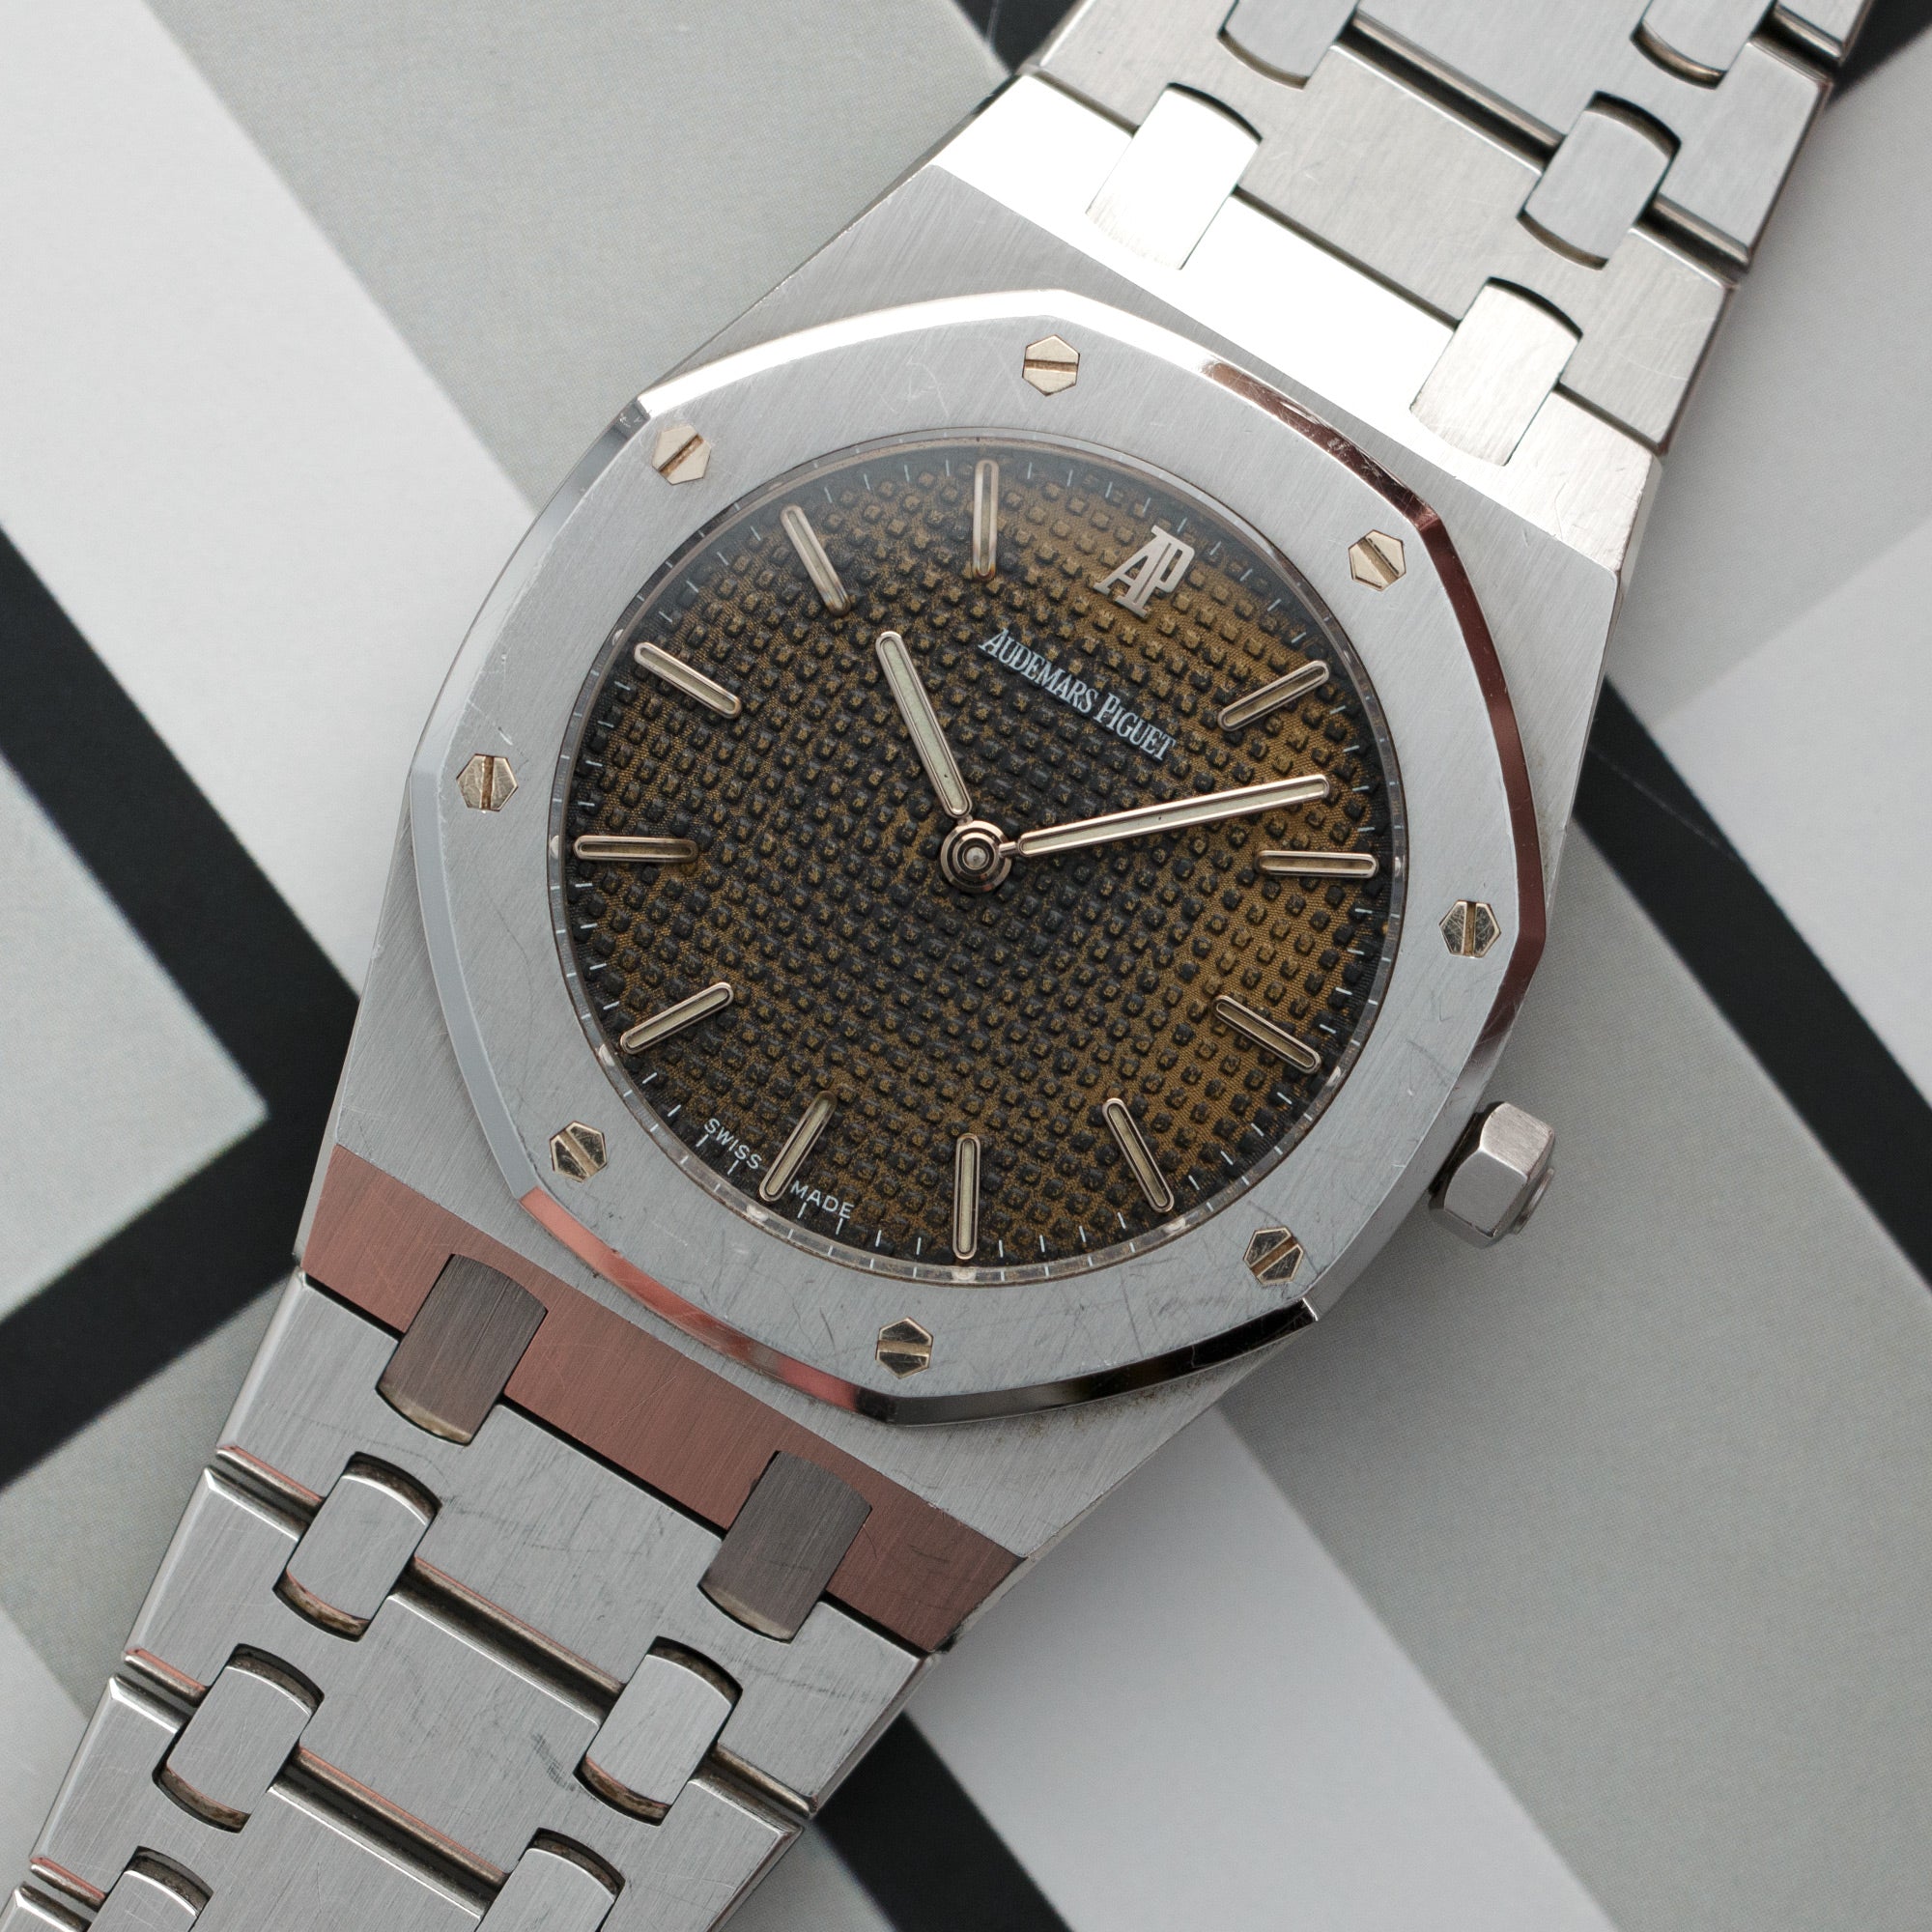 Audemars Piguet - Audemars Piguet Royal Oak Brown Dial Watch, Ref. 56175 - The Keystone Watches